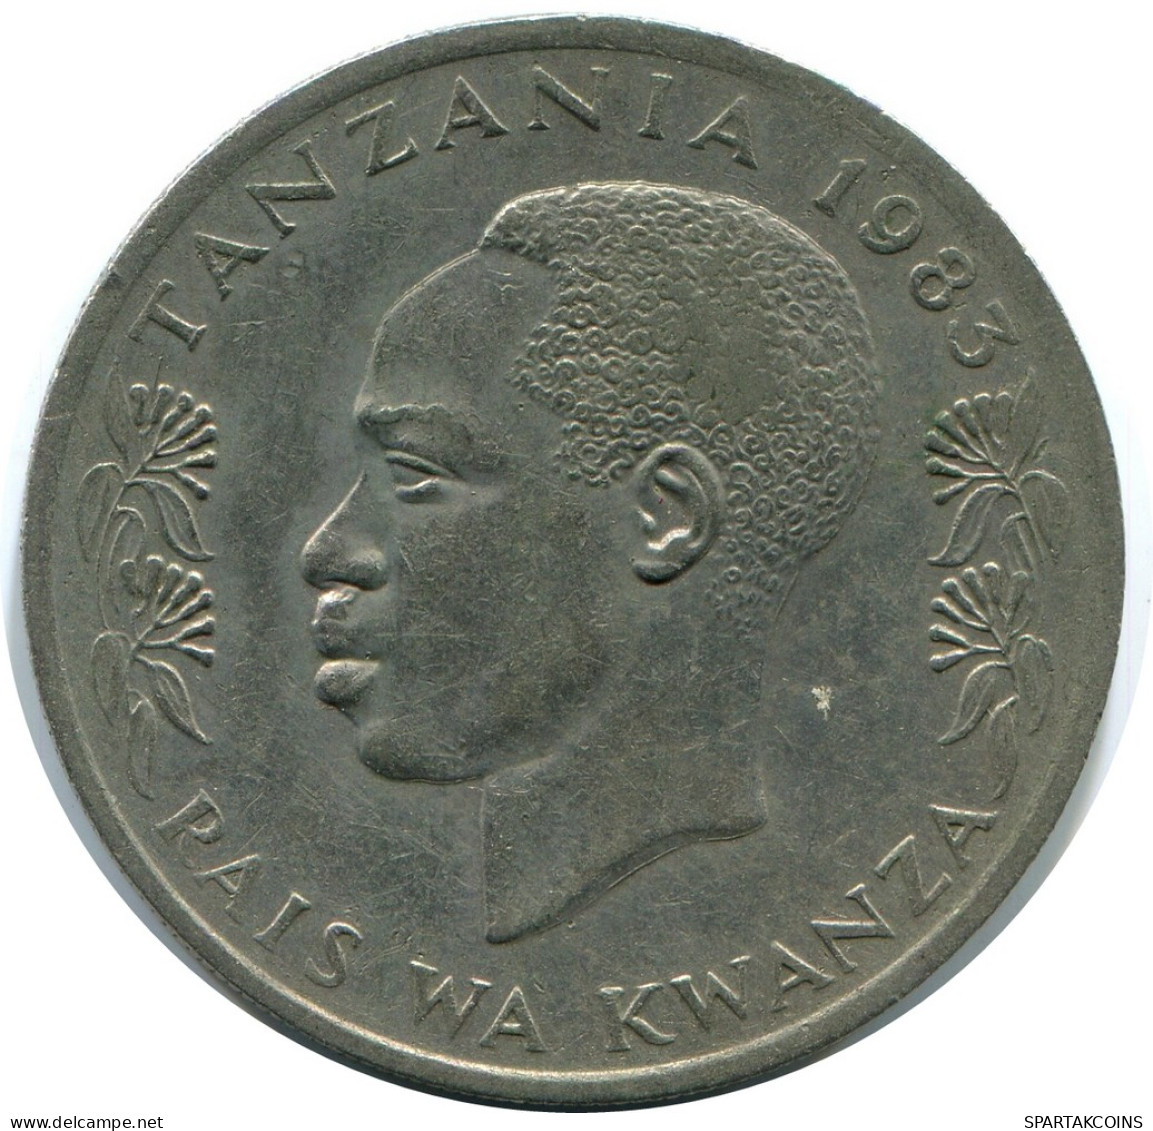 1 SHILINGI 1983 TANZANIA Coin #AZ090.U - Tansania